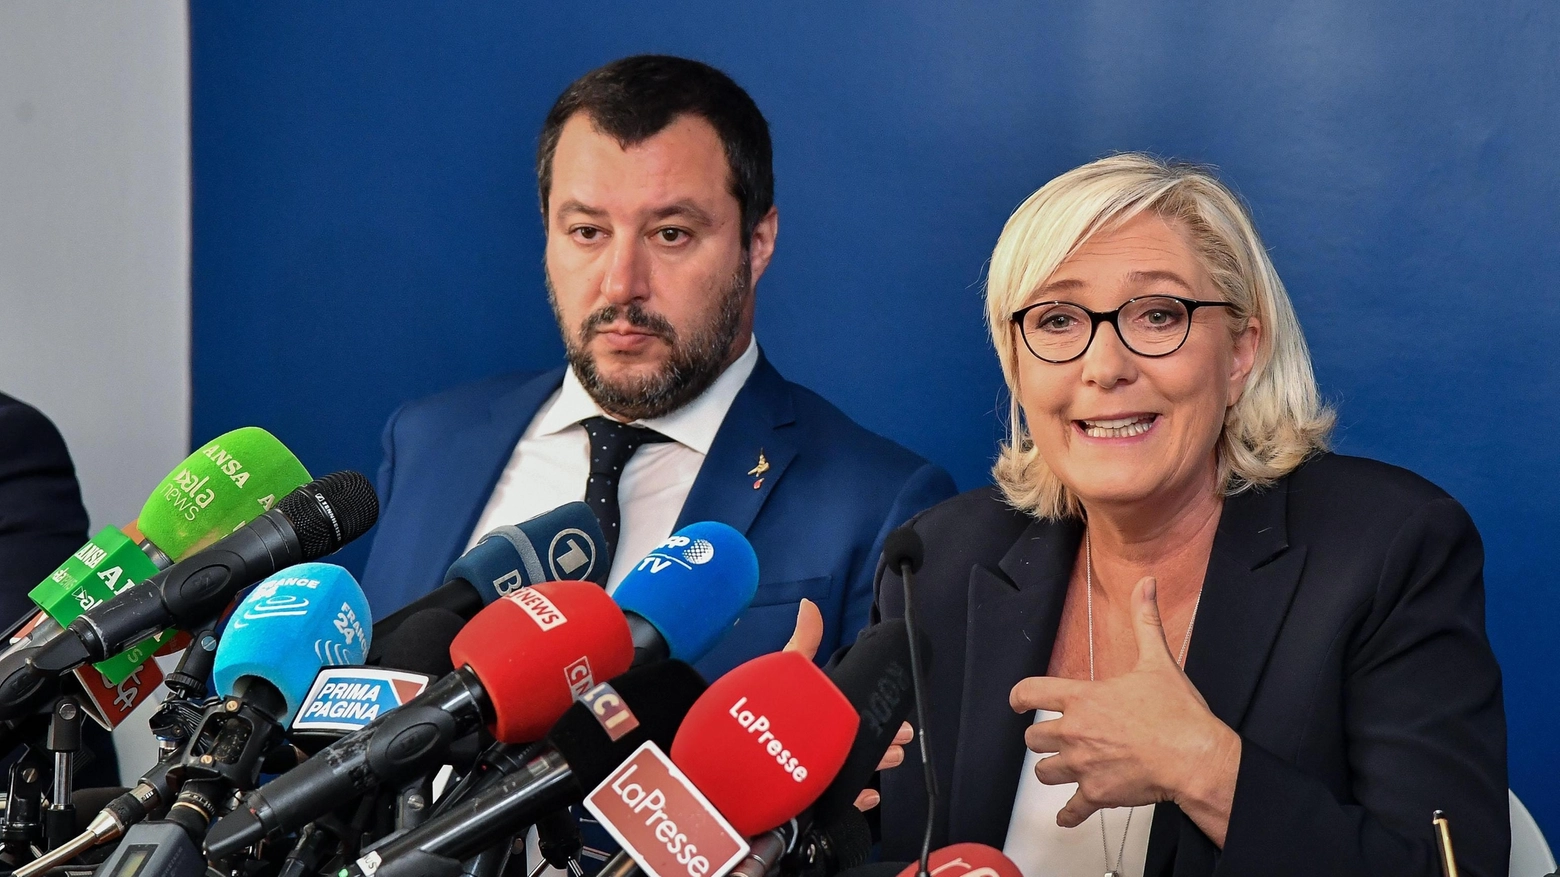 Incontro Salvini-Le Pen rinviato per gli scontri in Francia